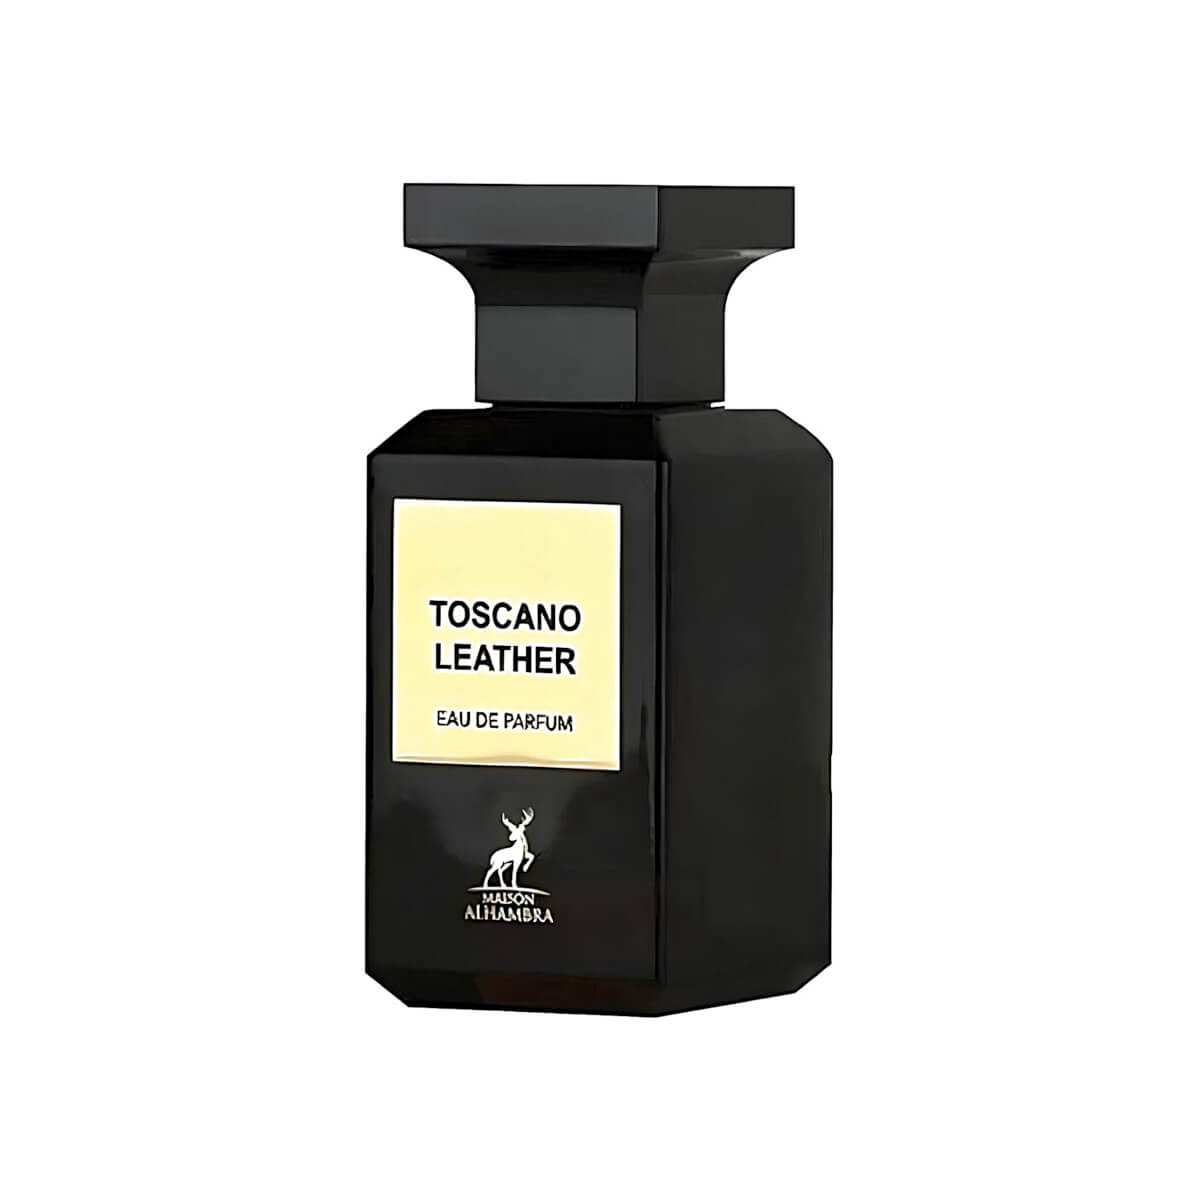 Parfums Toscano Leather de la marque Maison Alhambra mixte 80 ml